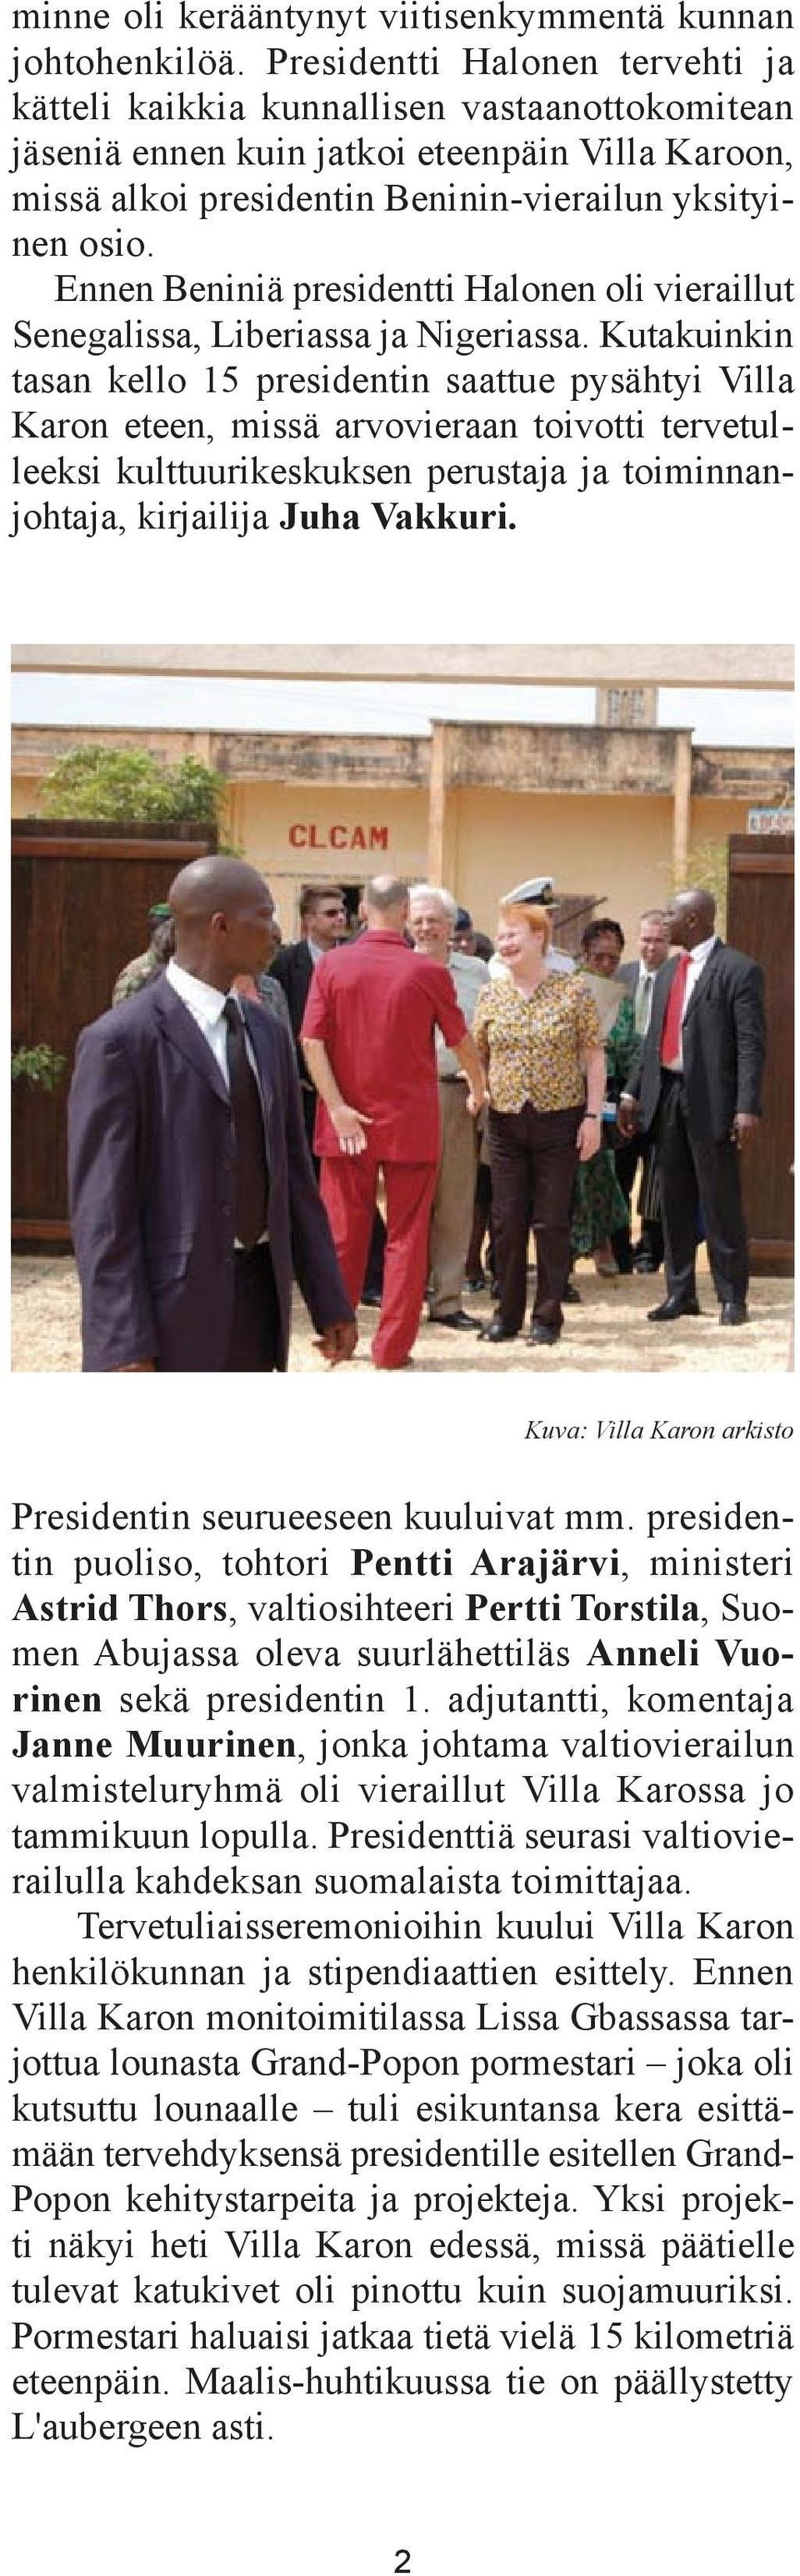 Ennen Beniniä presidentti Halonen oli vieraillut Senegalissa, Liberiassa ja Nigeriassa.